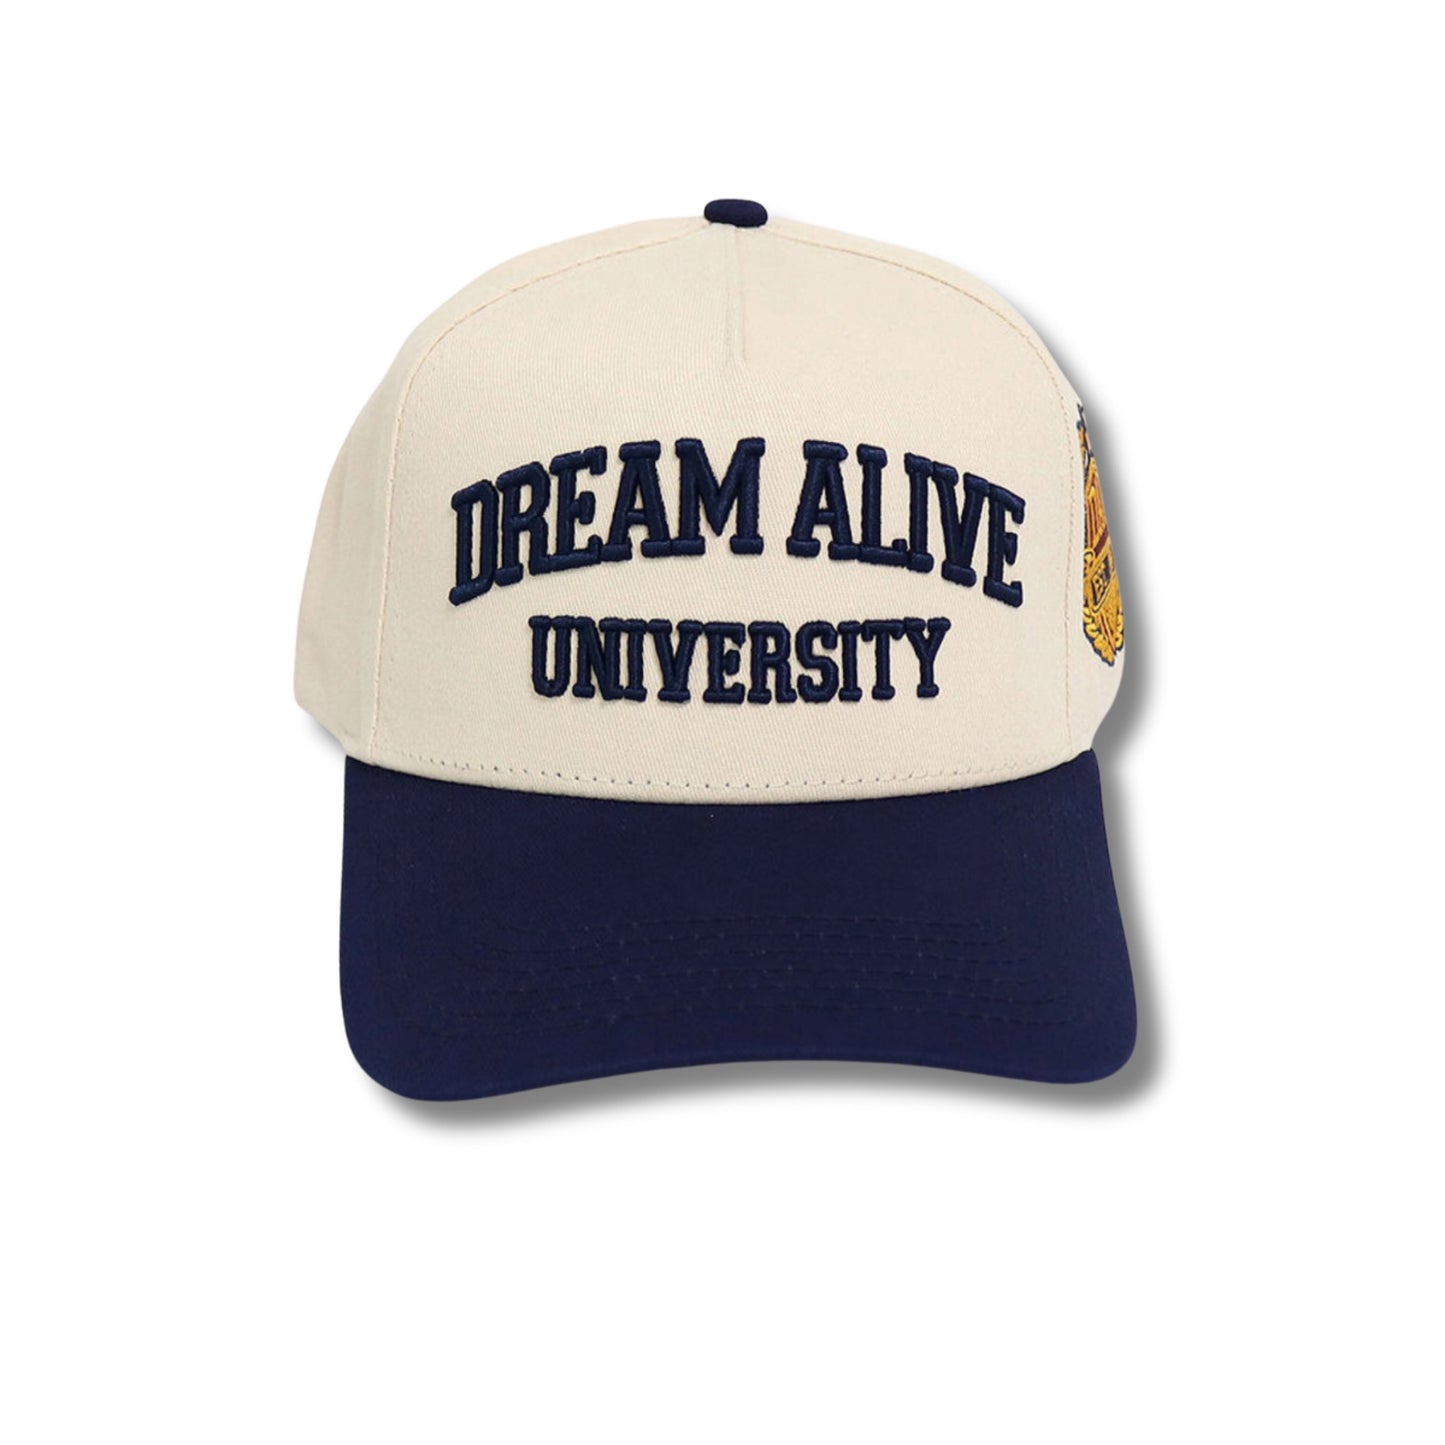 University Strapback (Cream & Navy)